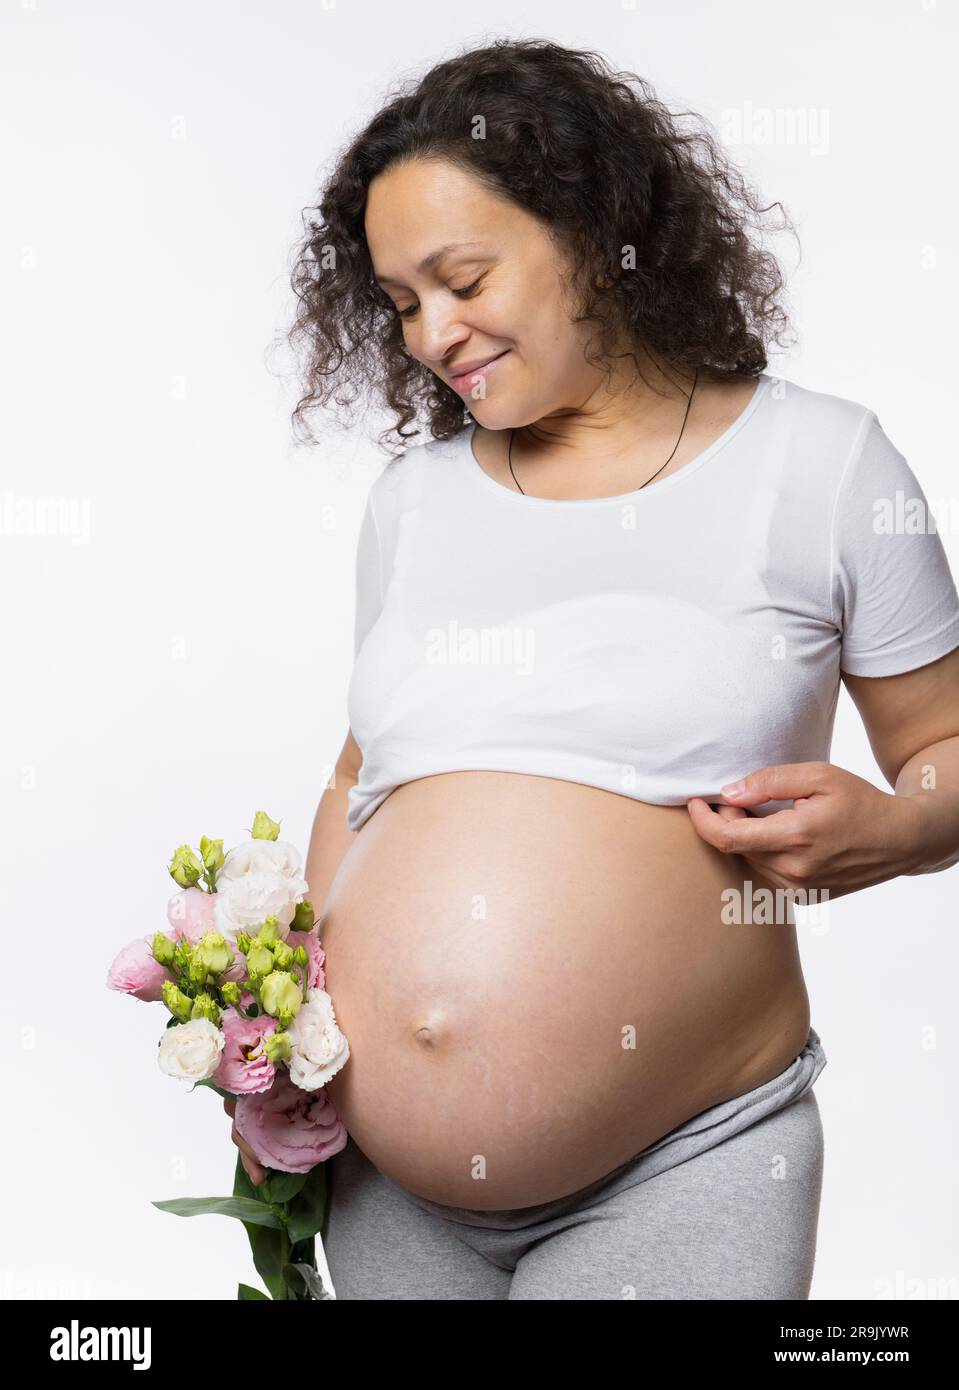 Wunderschöne, multiethnische, gravide Frau, die einen Blumenstrauß in der Hand hält, lächelt und ihren schwangeren Bauch in der späten Schwangerschaft ansieht Stockfoto